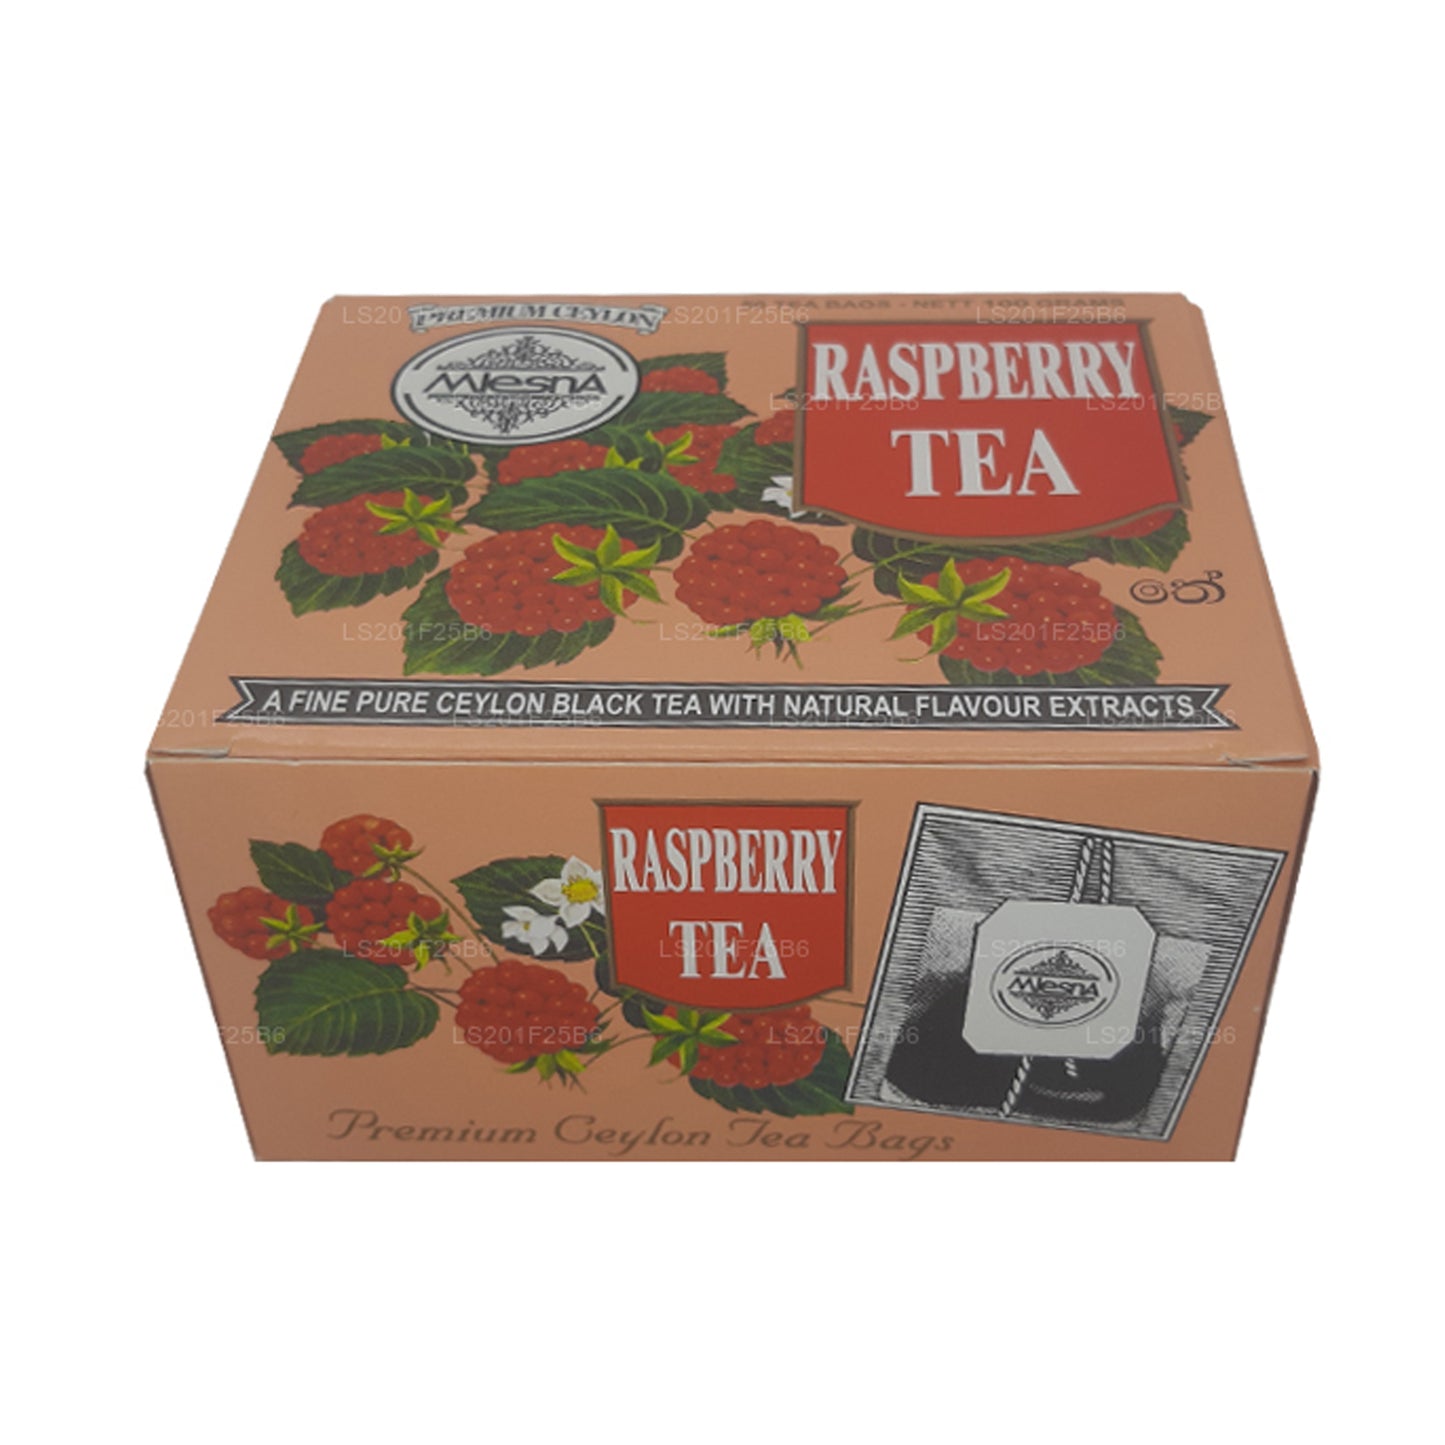 Mlesna Raspberry Tea (100g) 50 Tea Bags